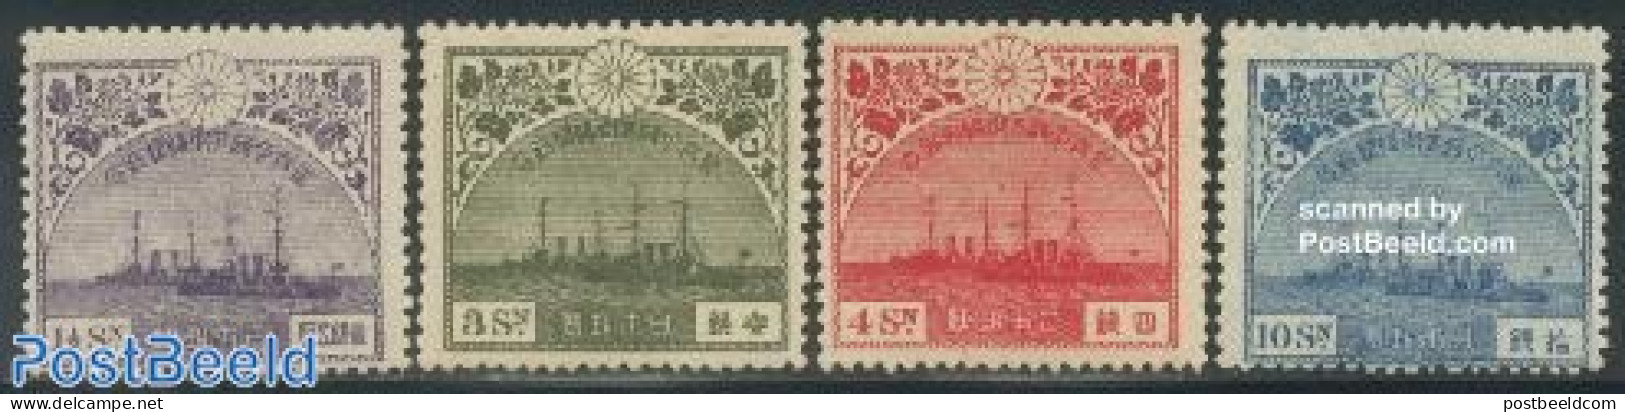 Japan 1921 European Visit Of Crown Prince 4v, Unused (hinged), History - Transport - Kings & Queens (Royalty) - Ships .. - Nuevos